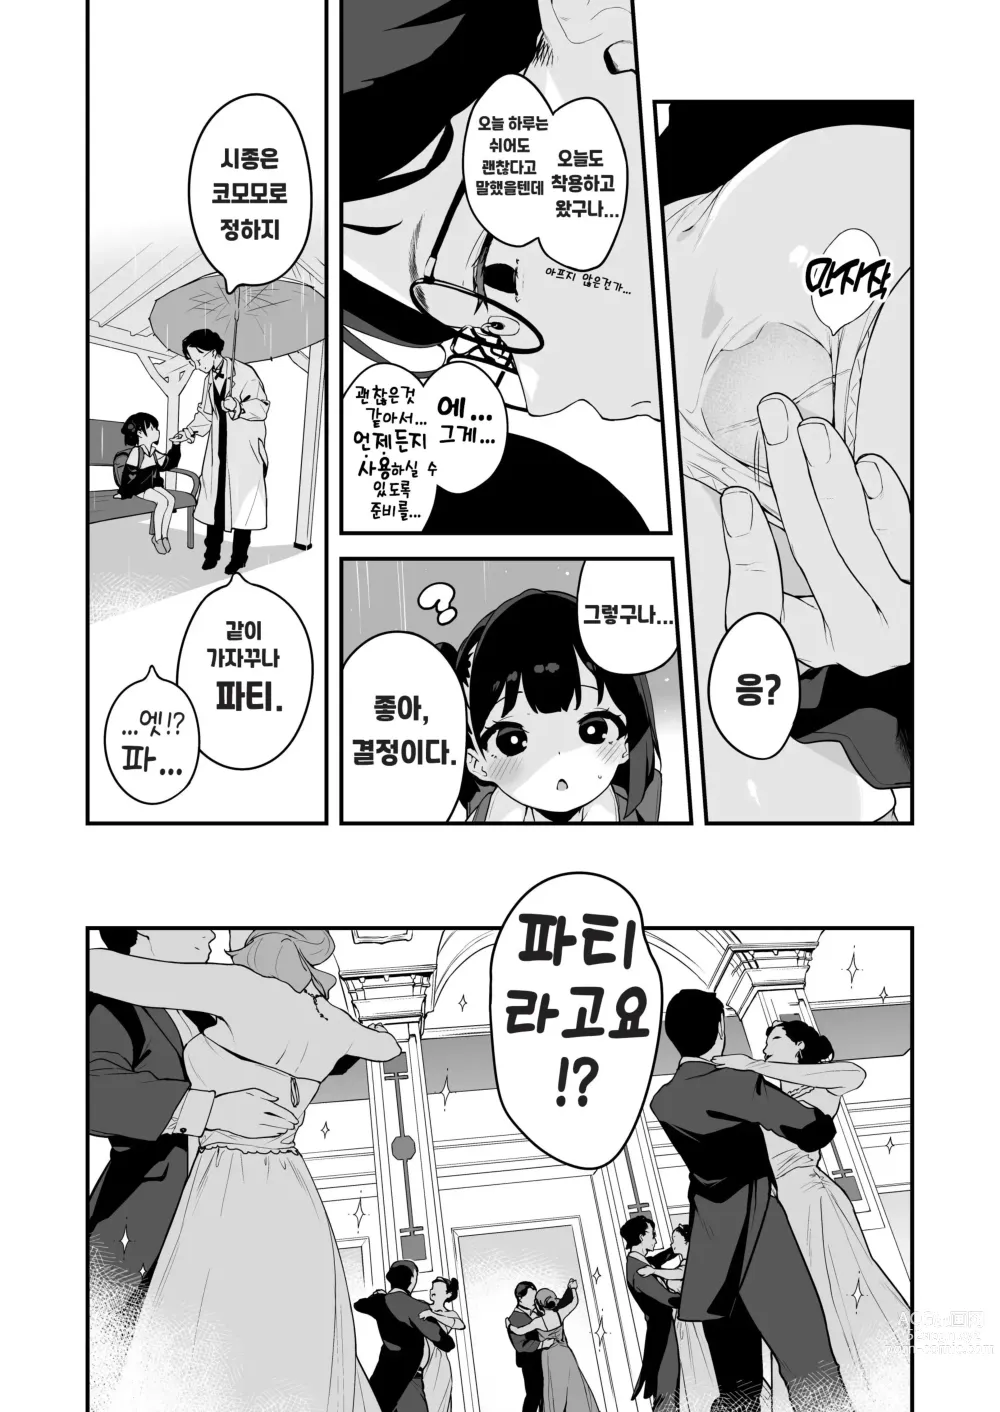 Page 30 of doujinshi Komomo wa Goshujinsama Senyo no Ryoana Nikubenki Loli Maid